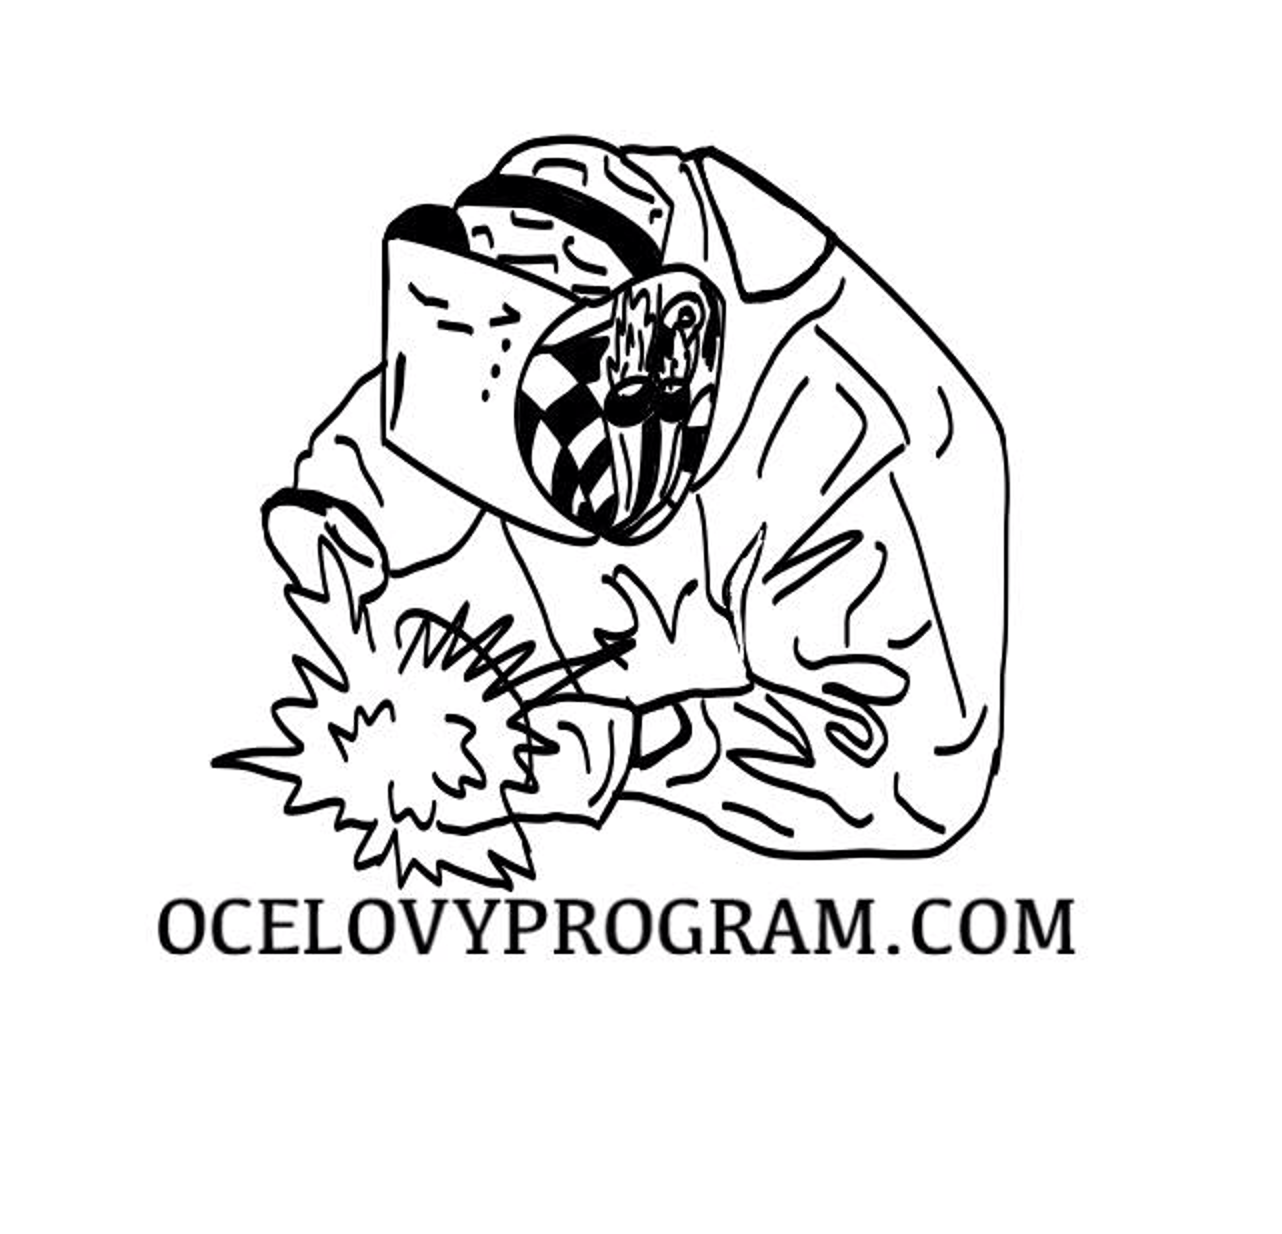 Ocelovyprogram.com